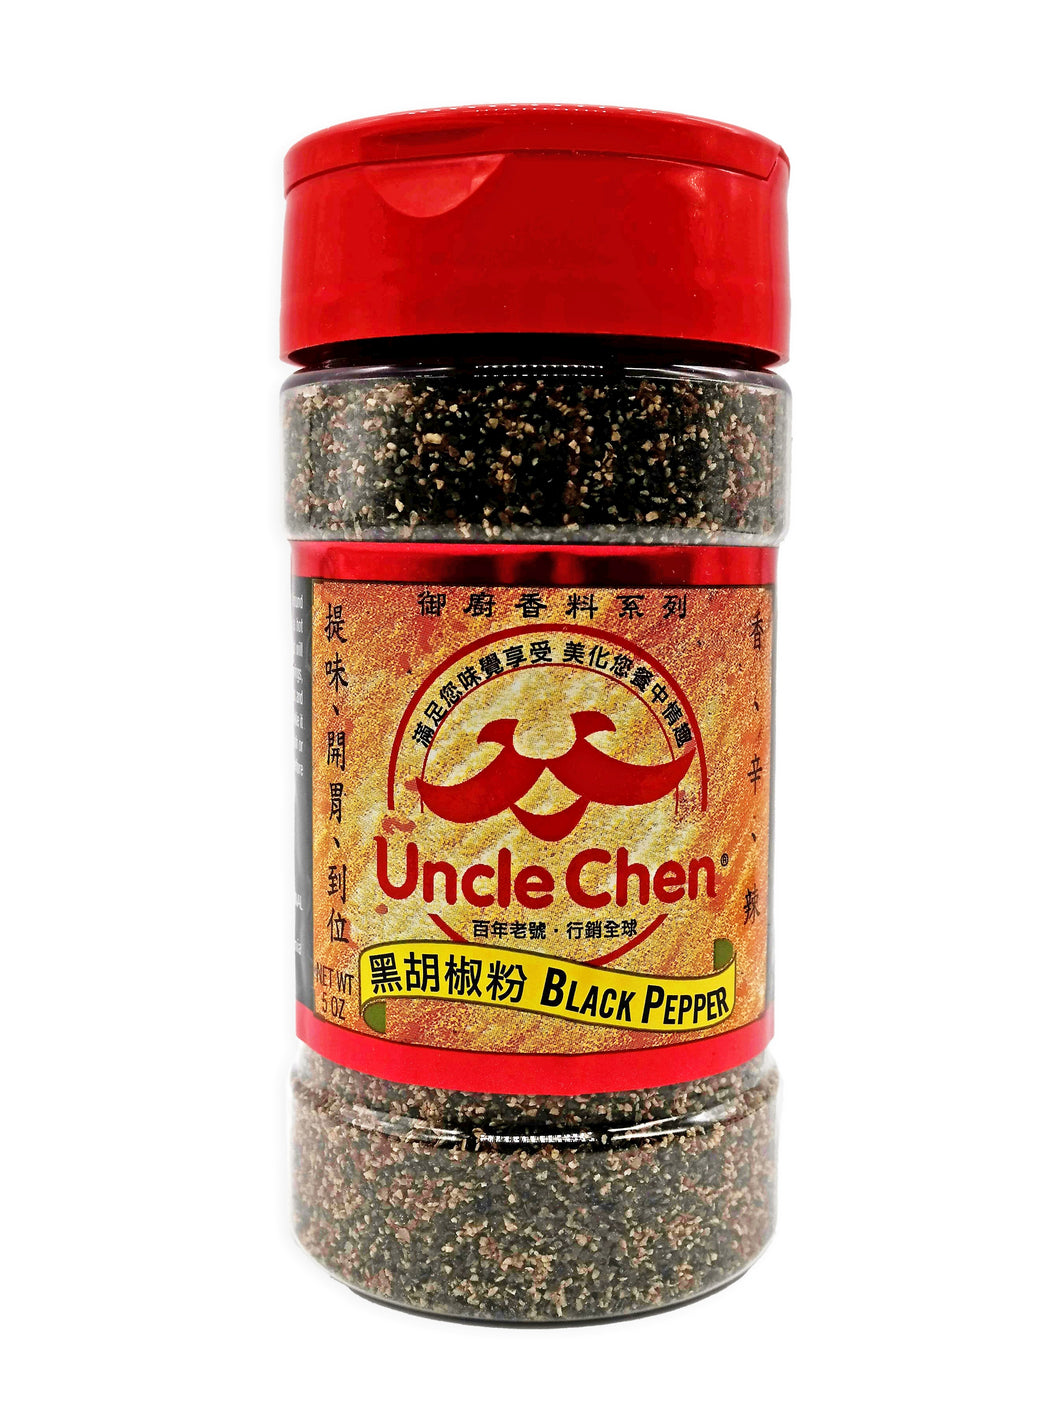 Uncle Chen Black Pepper